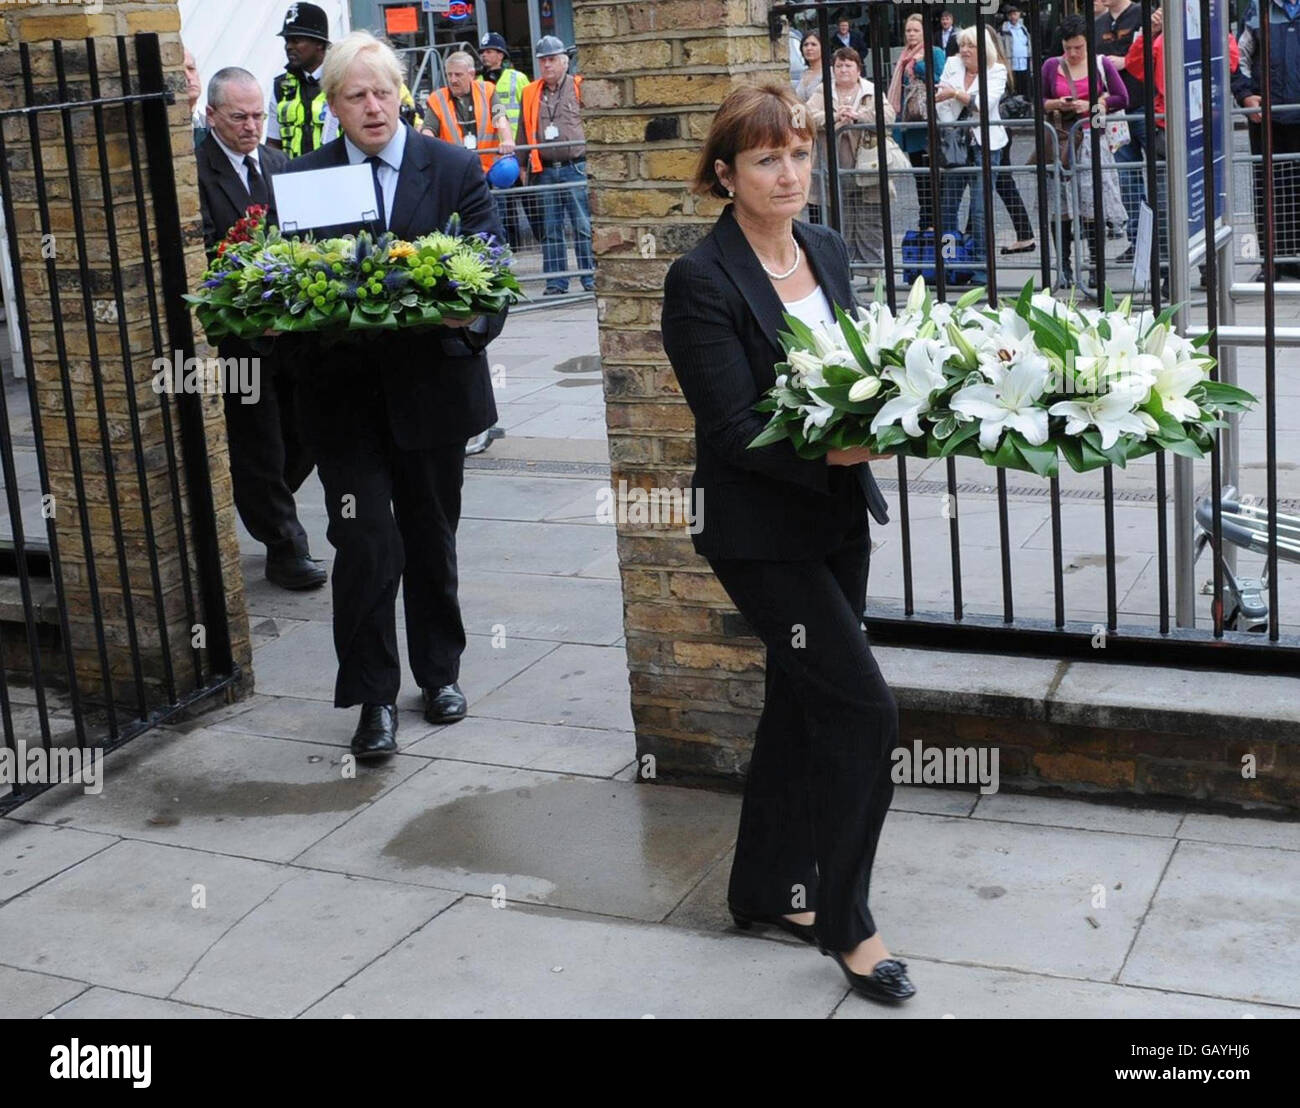 El alcalde de Londres, Boris Johnson, y Tessa Jowell, Ministra responsable de la asistencia humanitaria, floraron en la estación Kings Cross, Londres, para conmemorar el tercer aniversario de los atentados del 7 de julio en el metro de Londres. Foto de stock